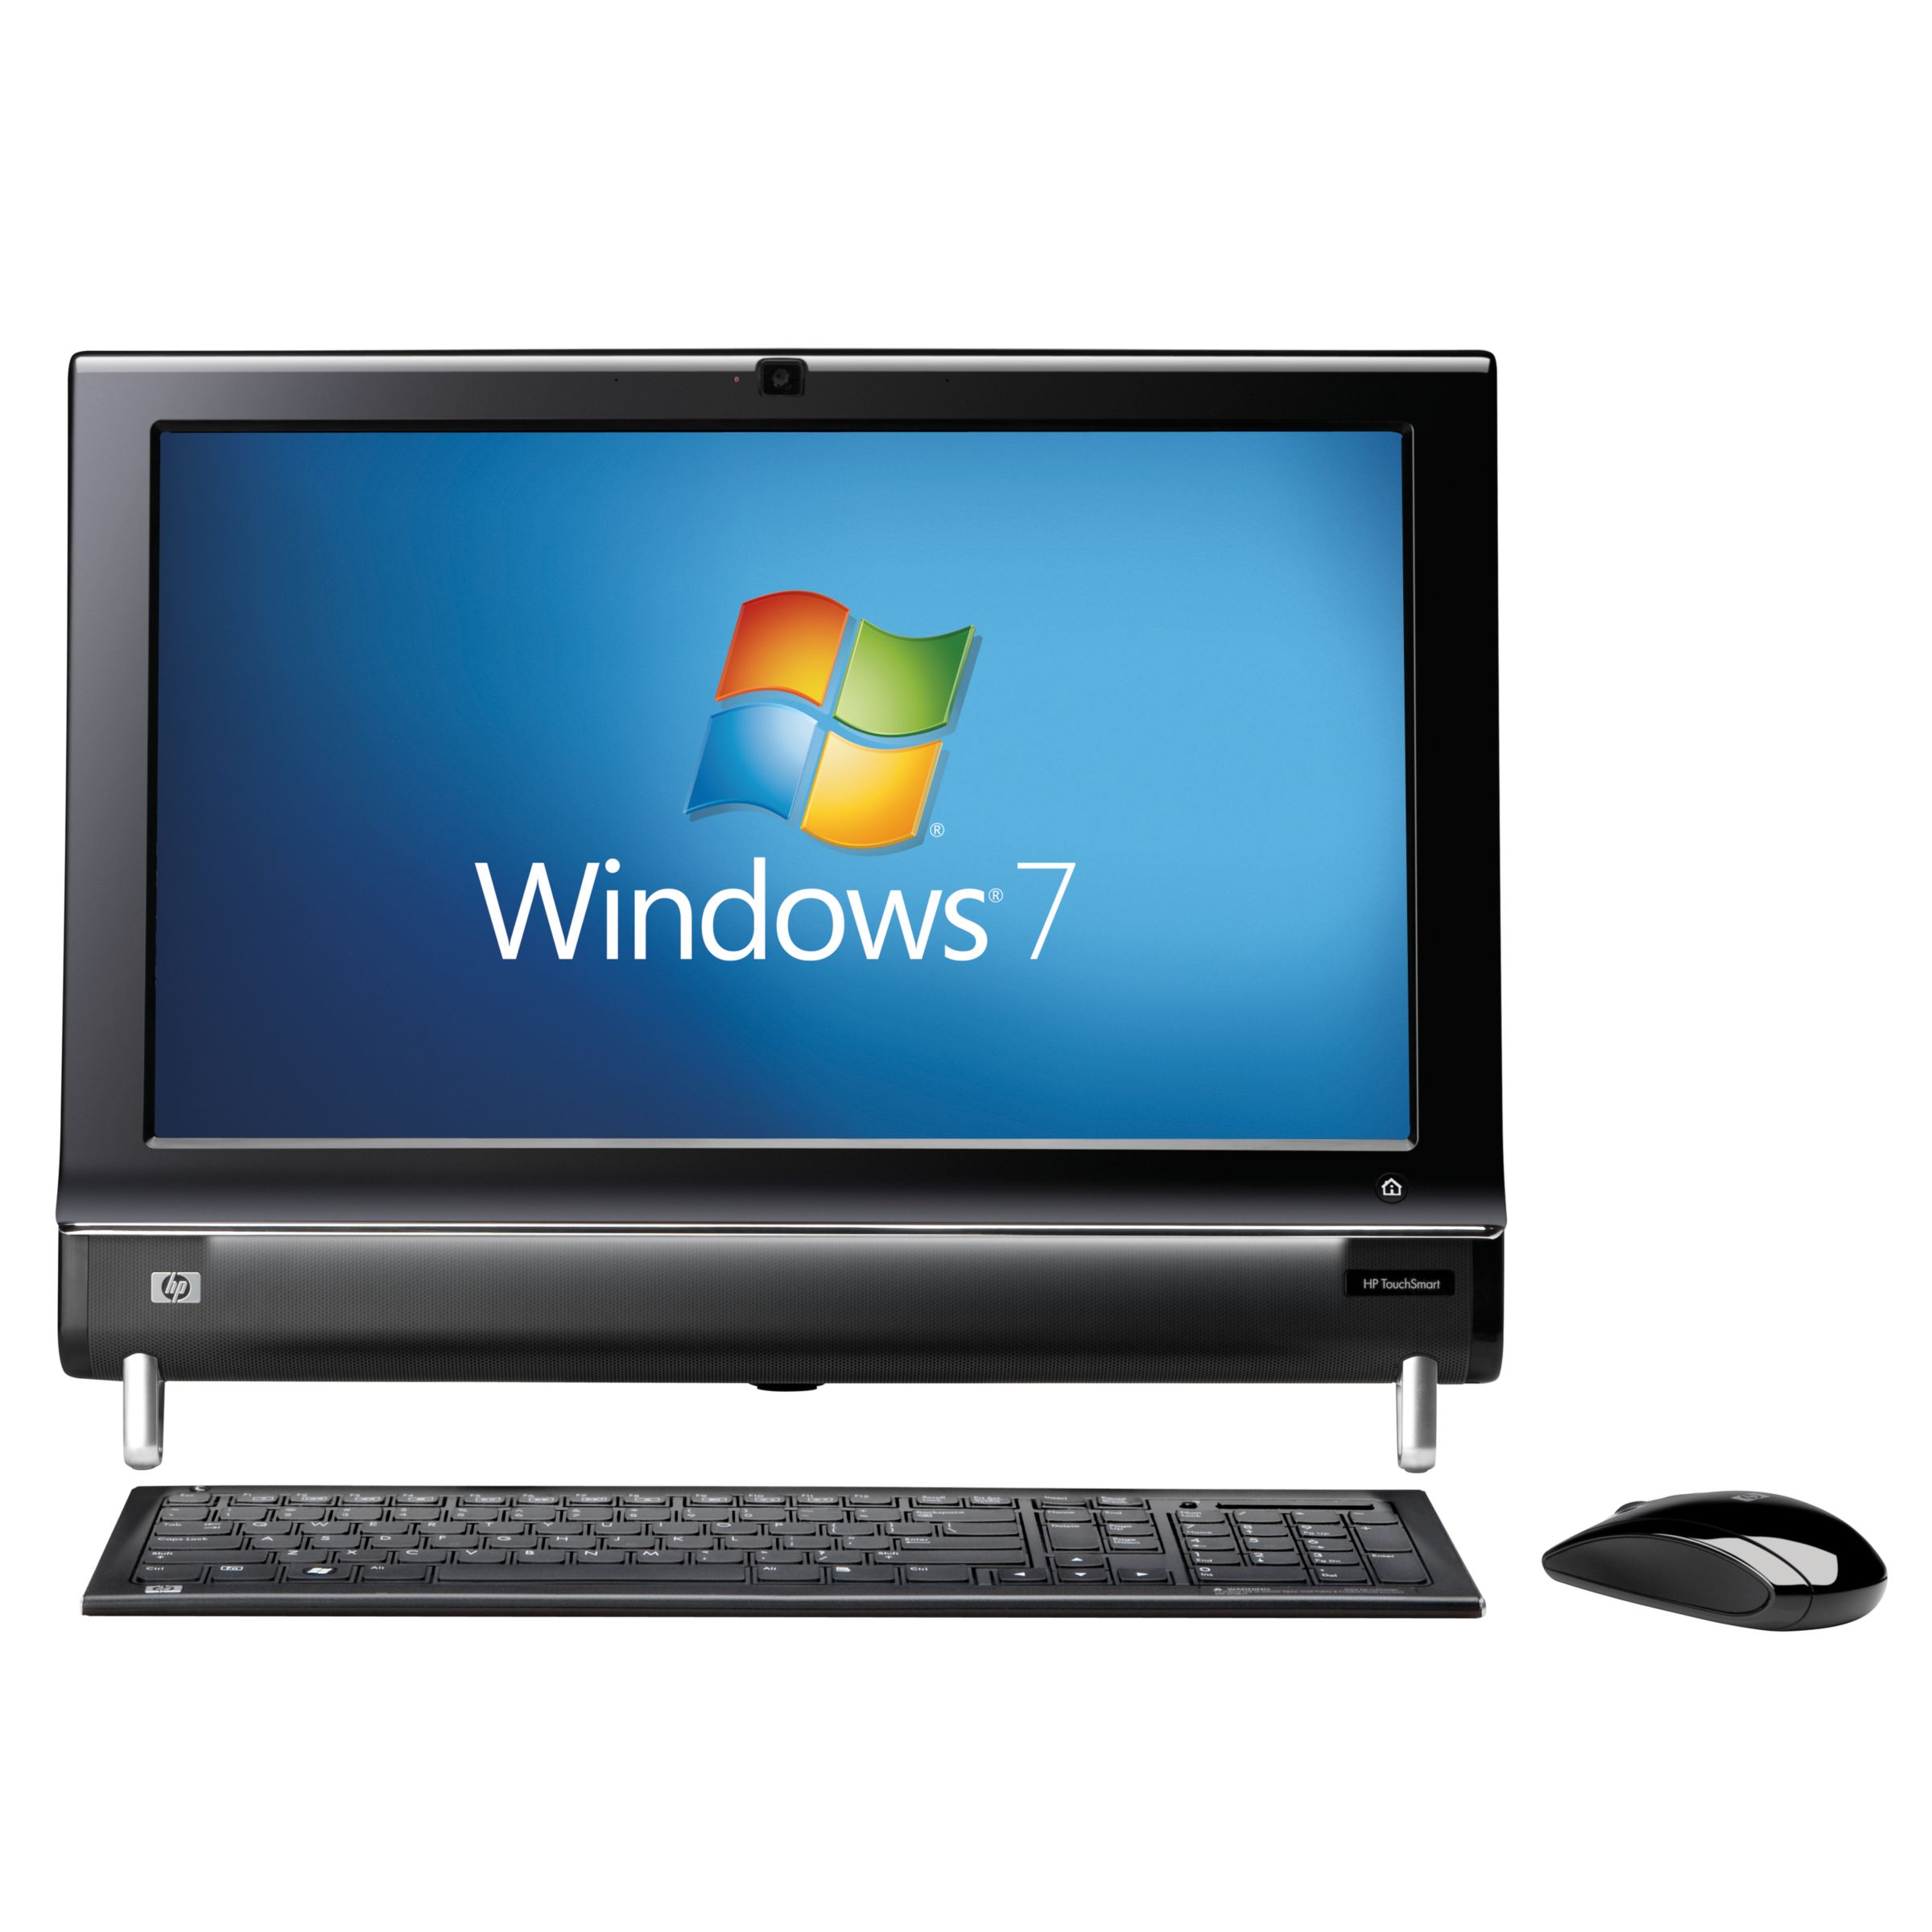 HP Pavilion TouchSmart 300-1230UK Desktop PC with 20" Screen at John Lewis